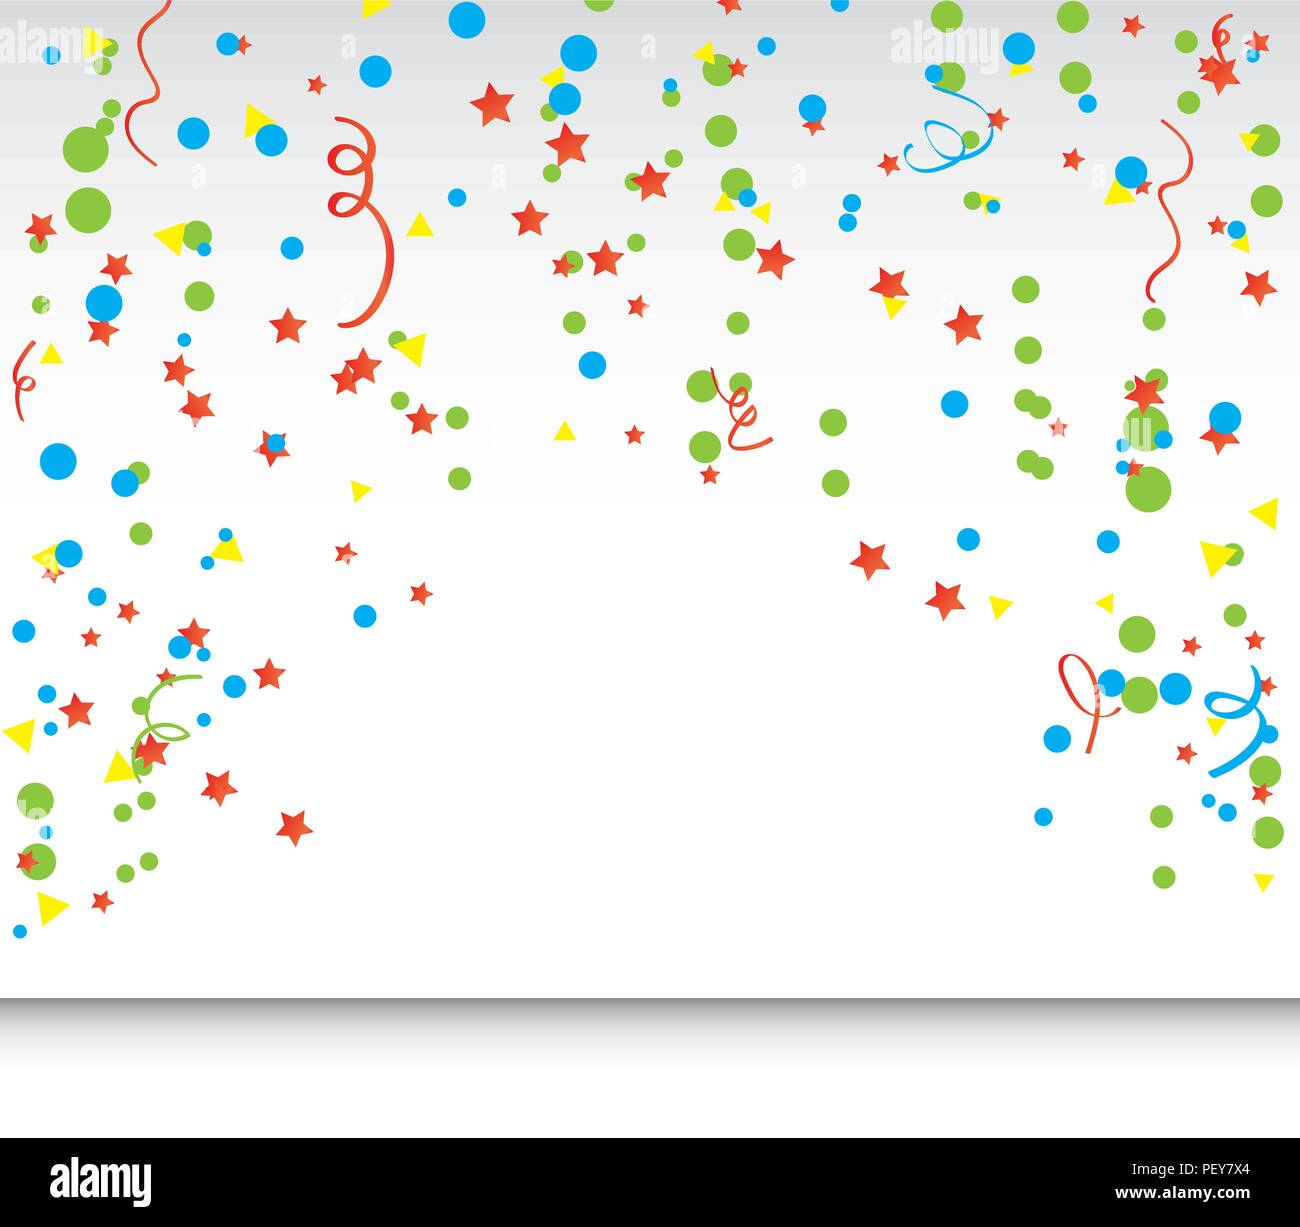 Weißer Hintergrund mit Konfetti Stock-Vektorgrafik - Alamy